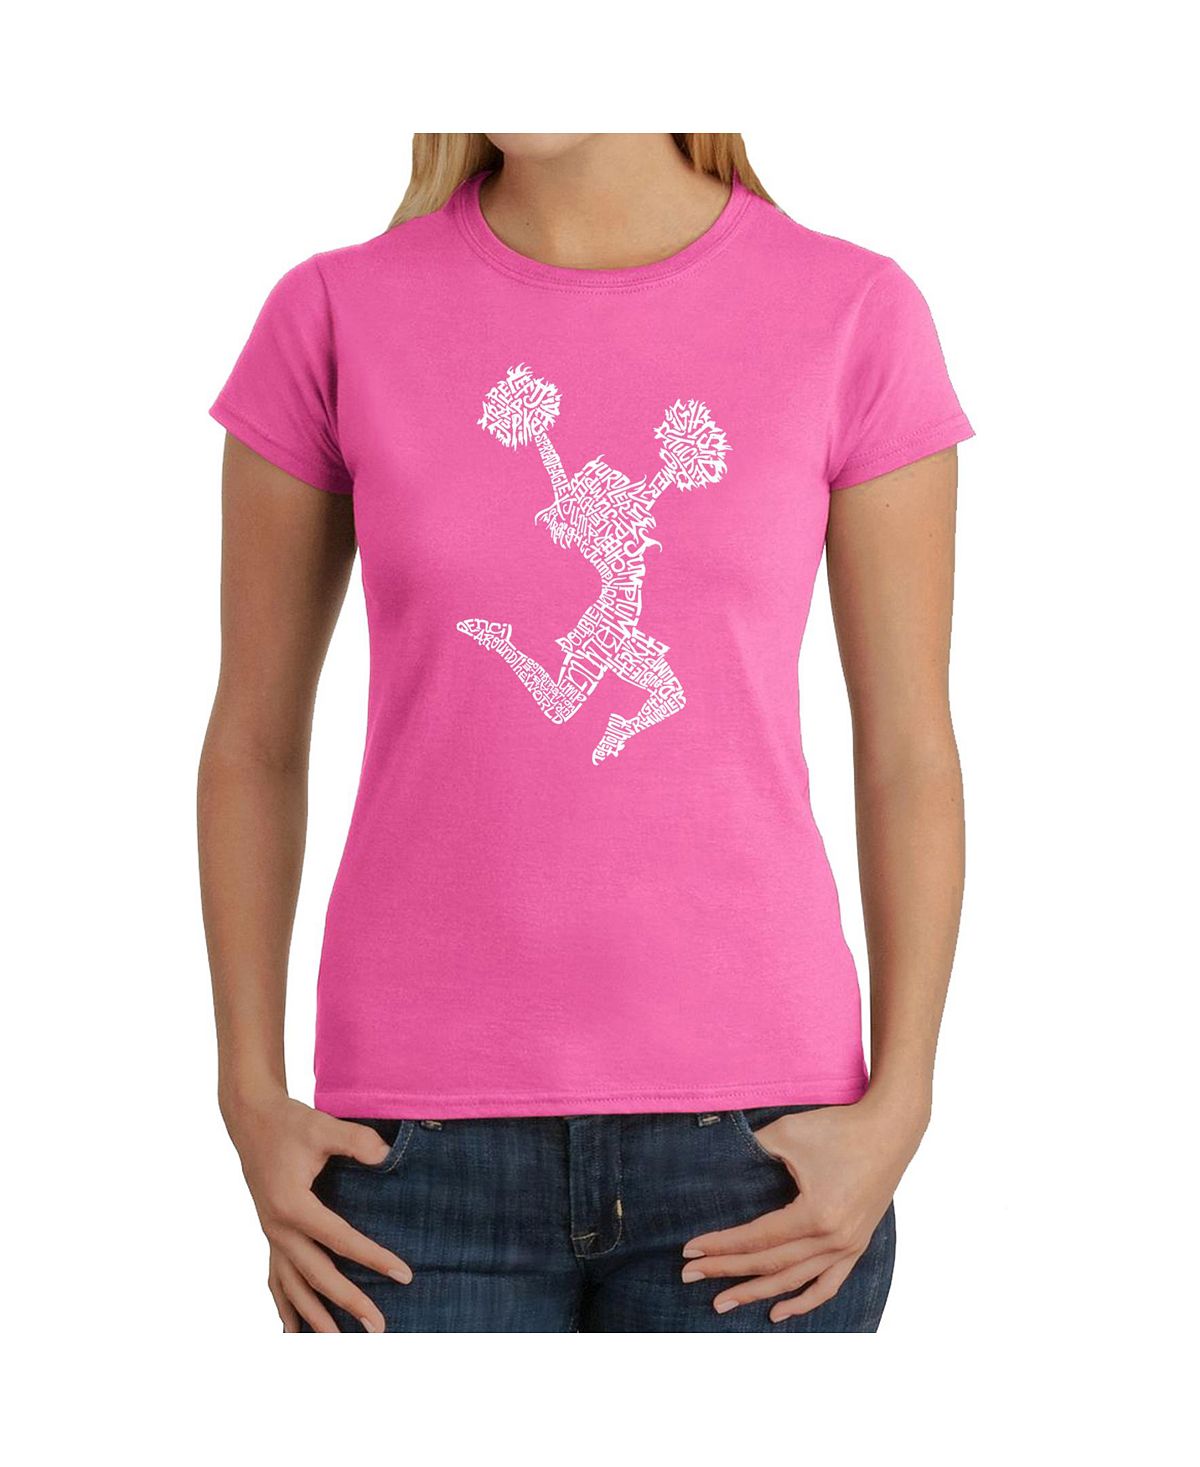 цена Женская футболка word art - развеселить LA Pop Art, розовый